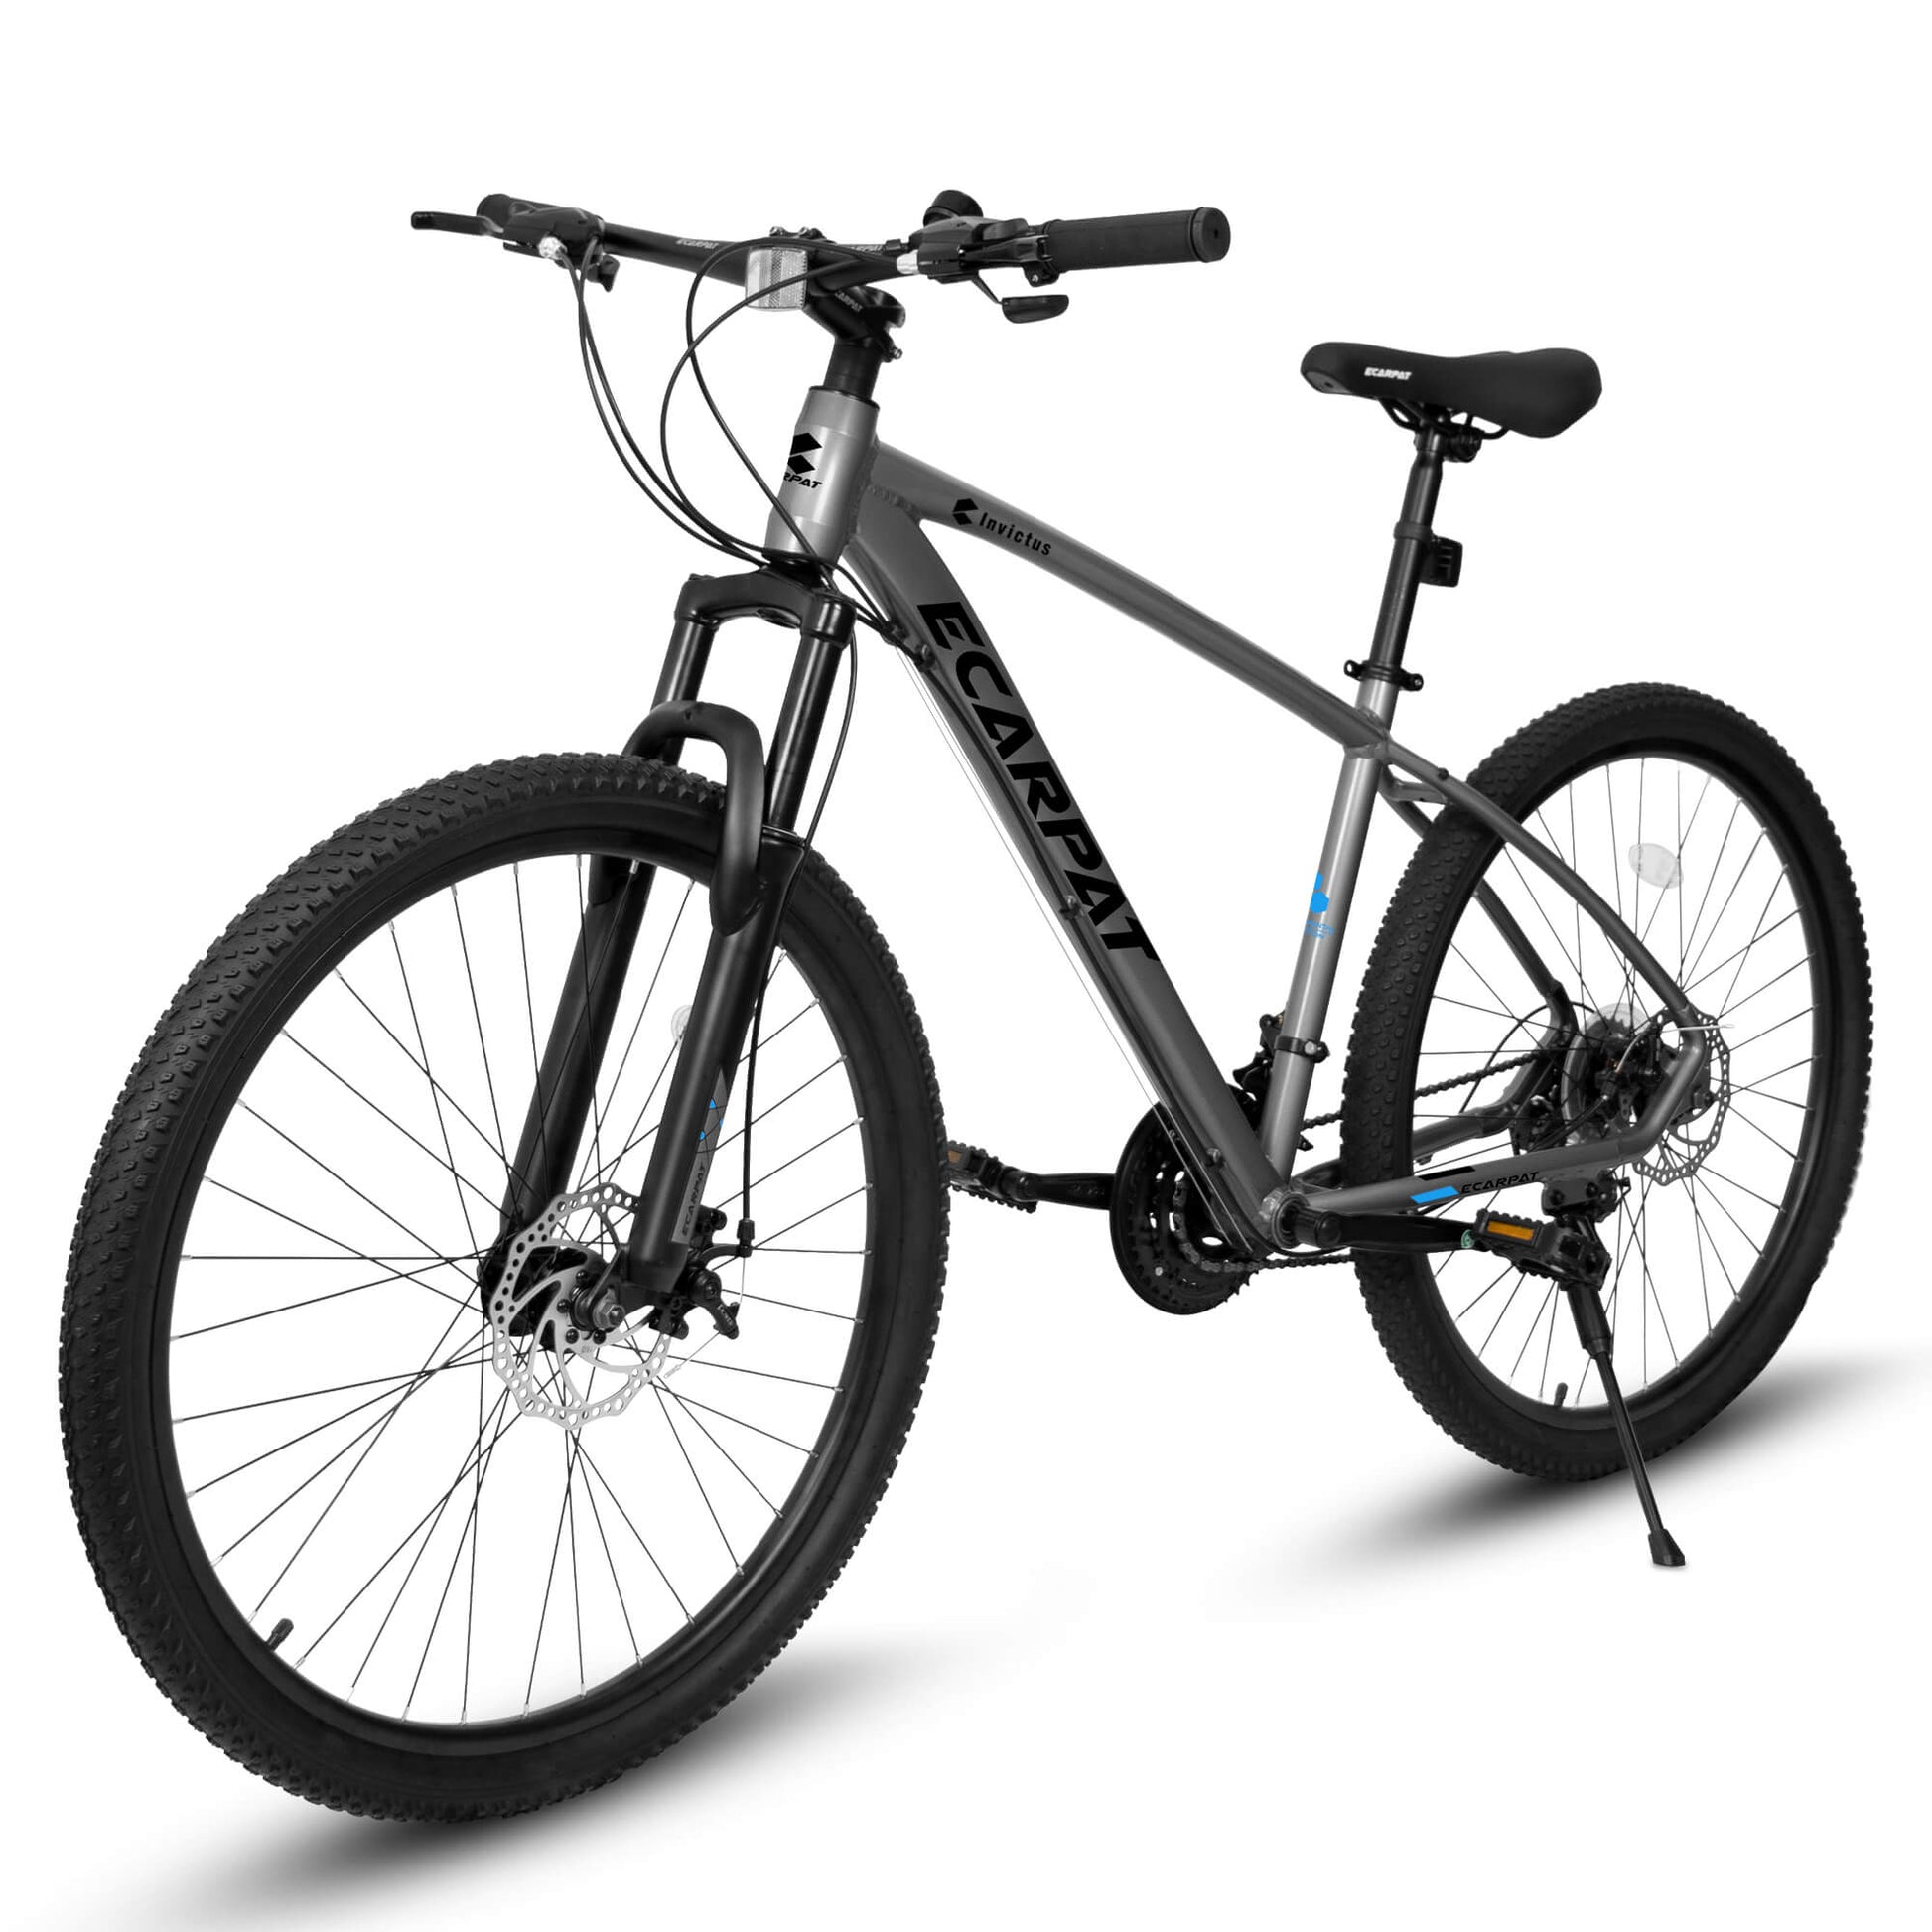 Ecarpat Tendar X5 27.5” Mountain and Hybrid Bike